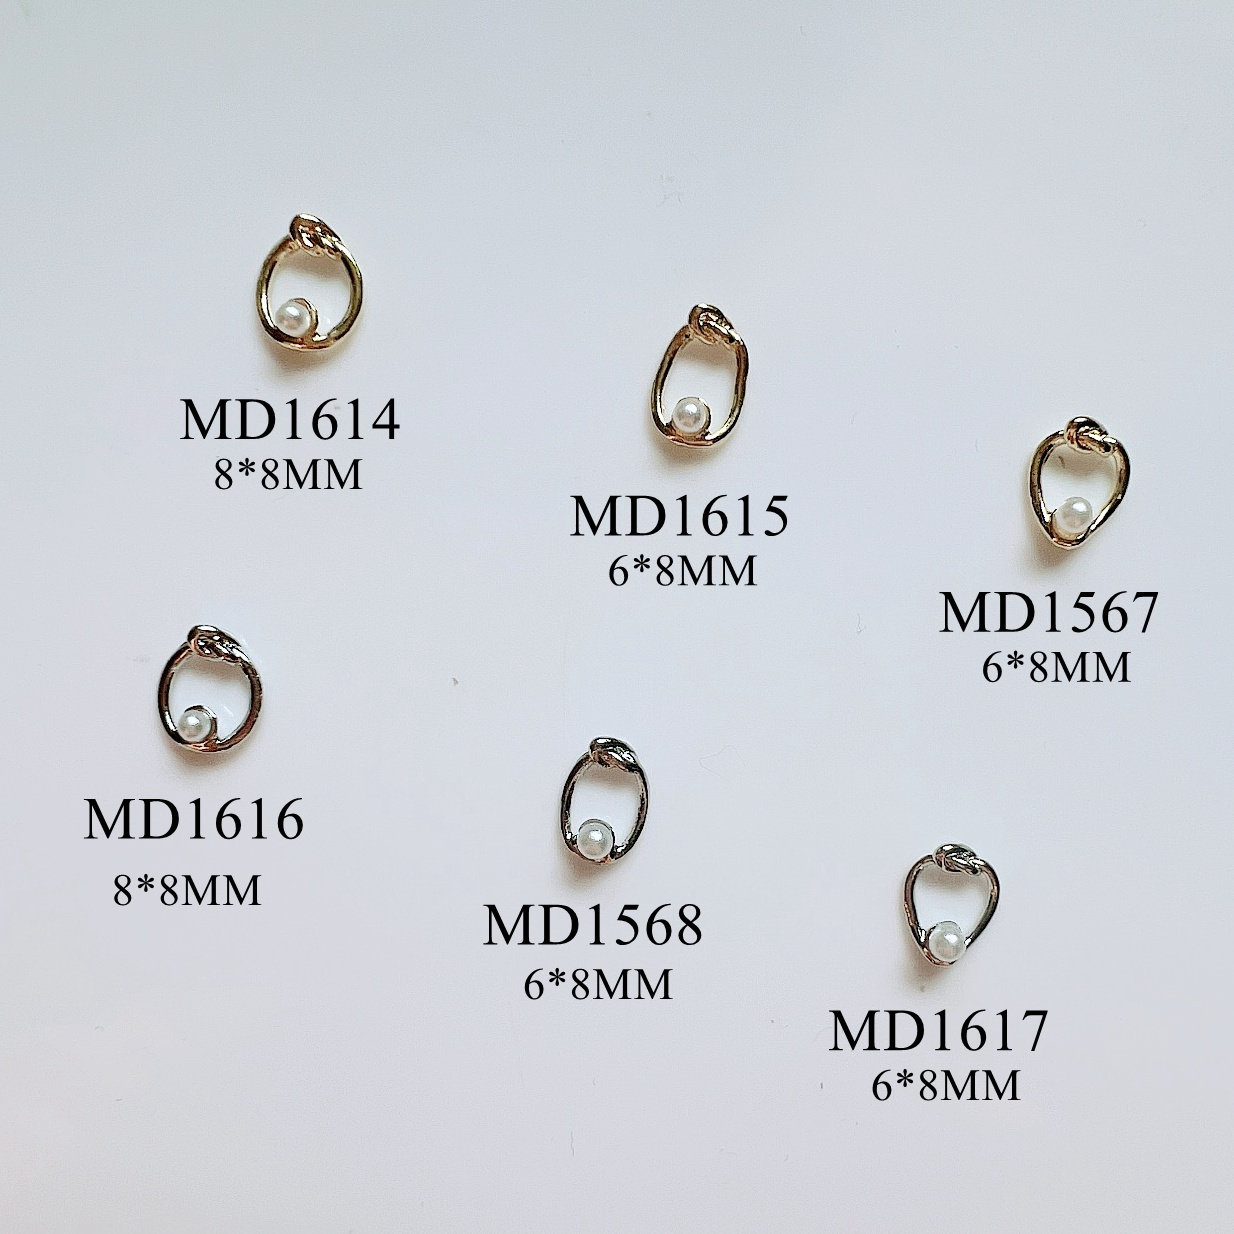 5 Stück Metall 3D Charms Dekoration Kreis Oval Herz Mit Perlen Formen Nail Art Md1614-1617 von NailAngel2019